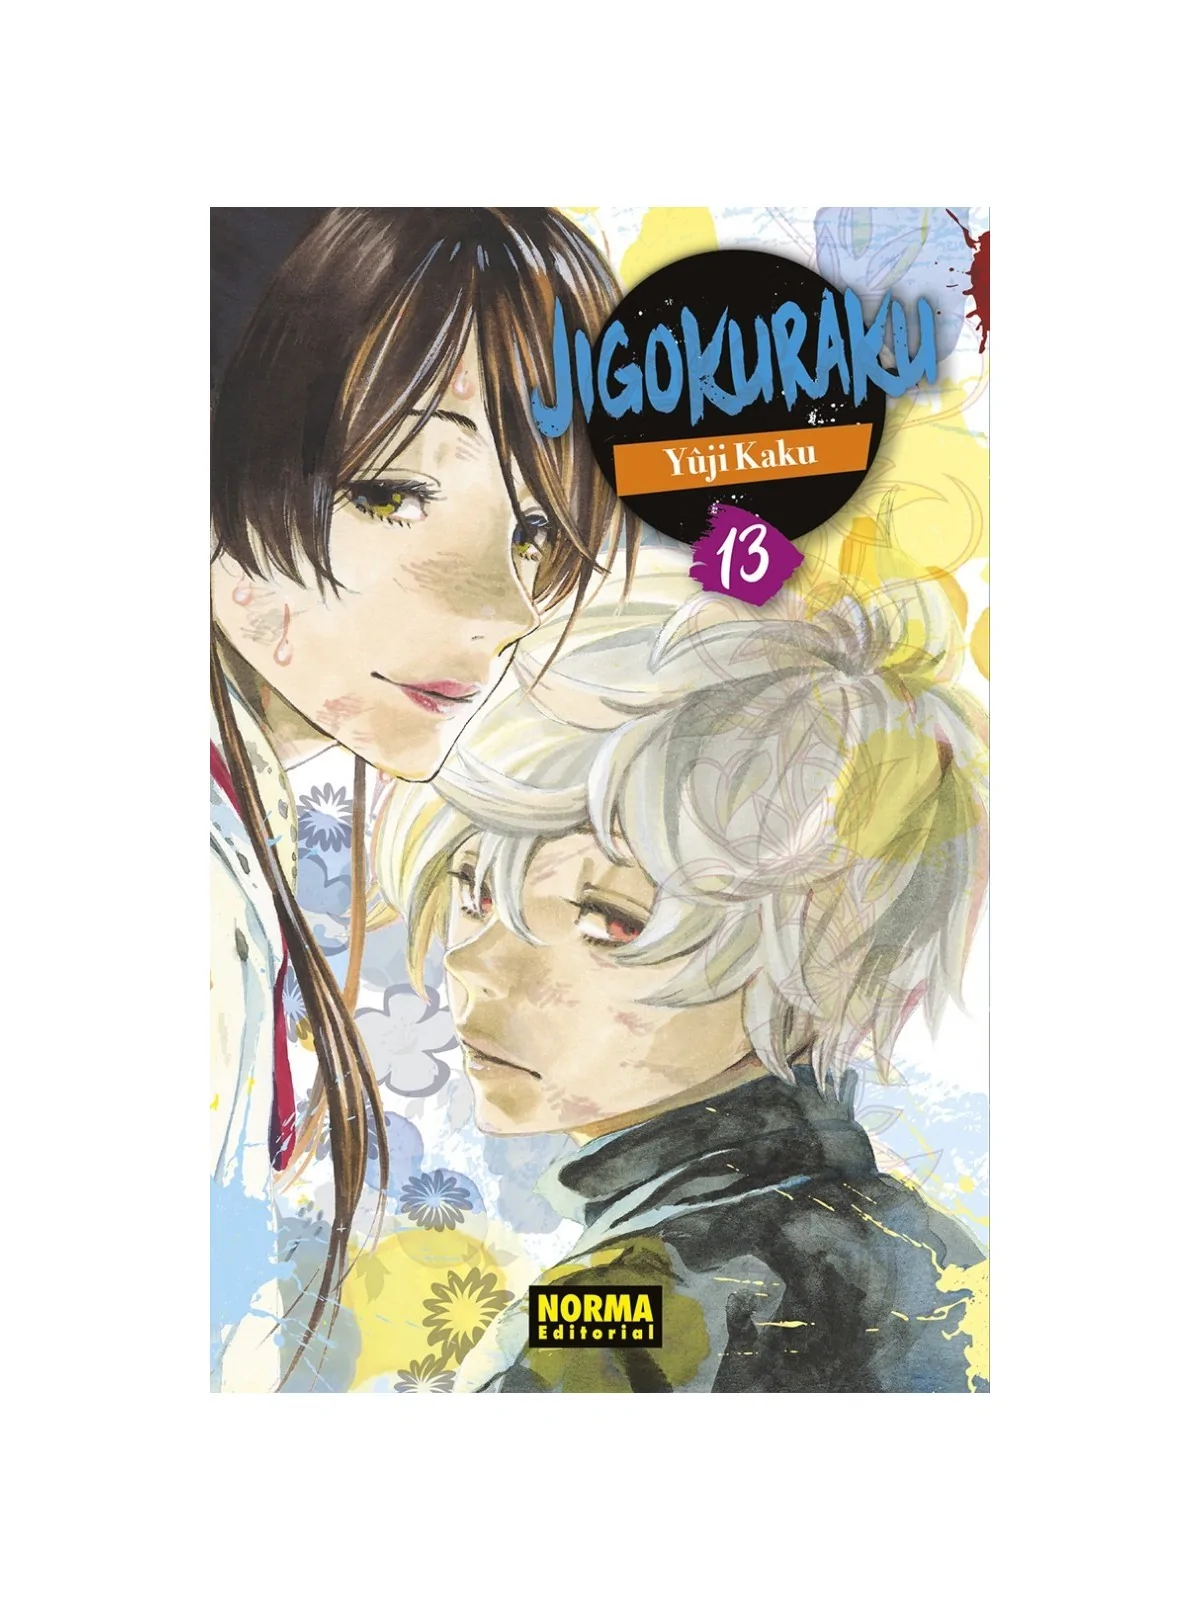 Comprar Jigokuraku 13 barato al mejor precio 8,55 € de Norma Editorial